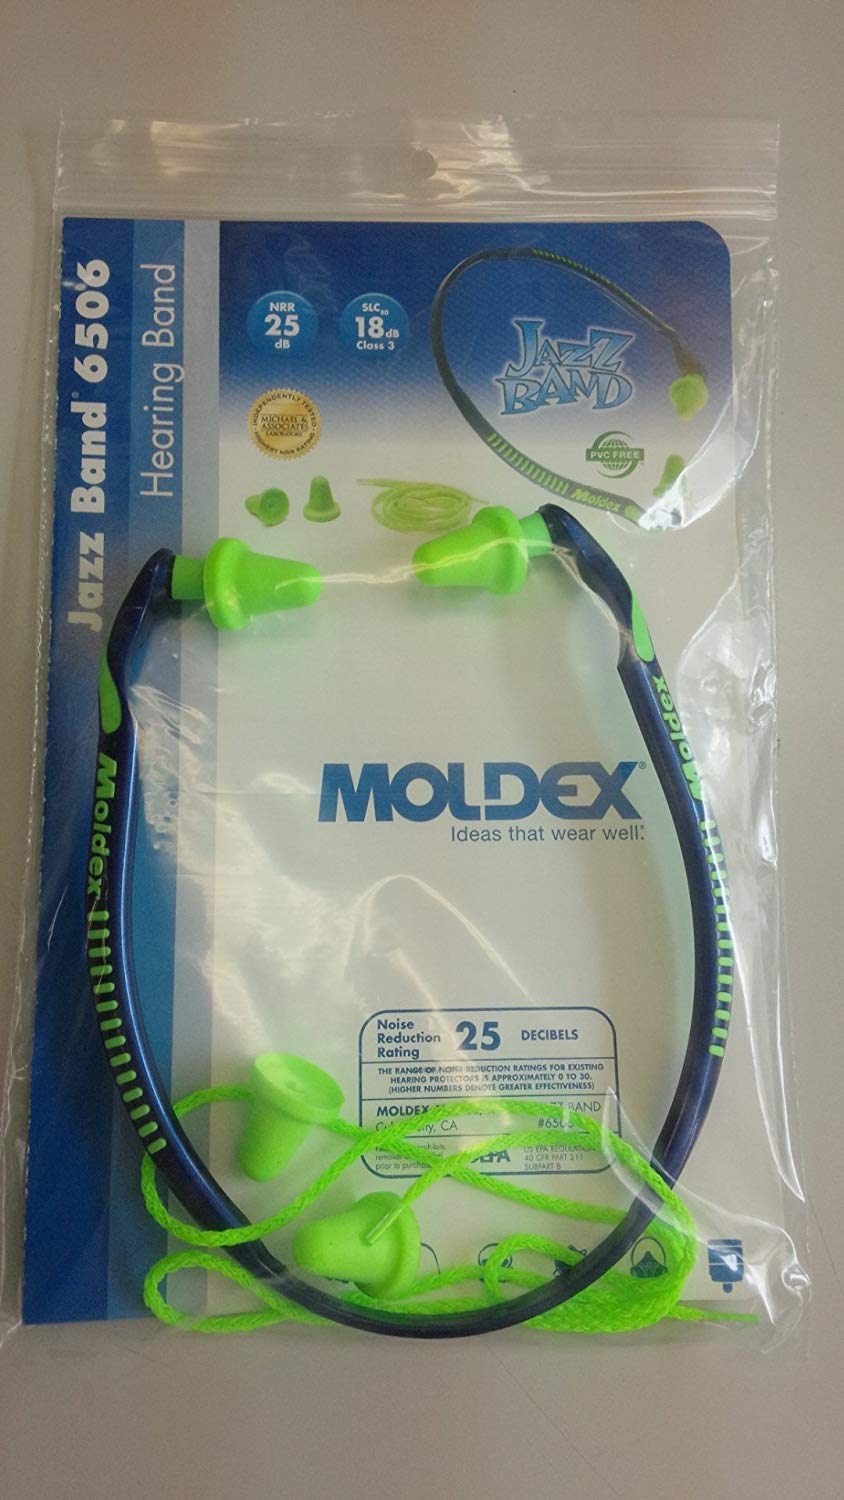 Moldex Jazz Band 6506 Ear Plugs